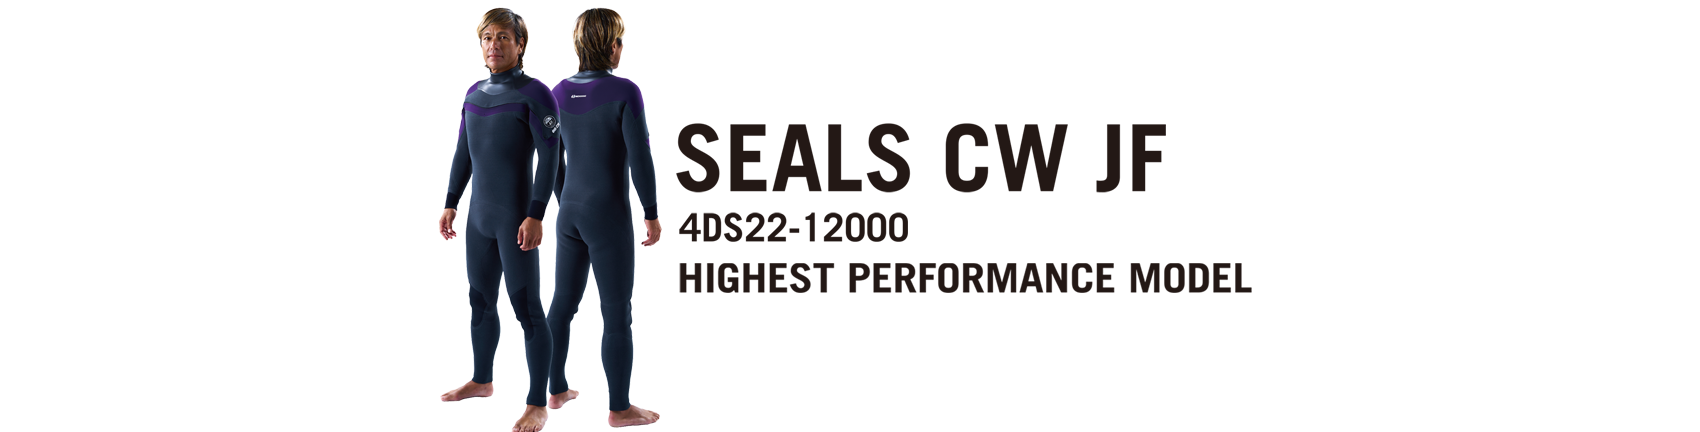 SEALS-CW-JF